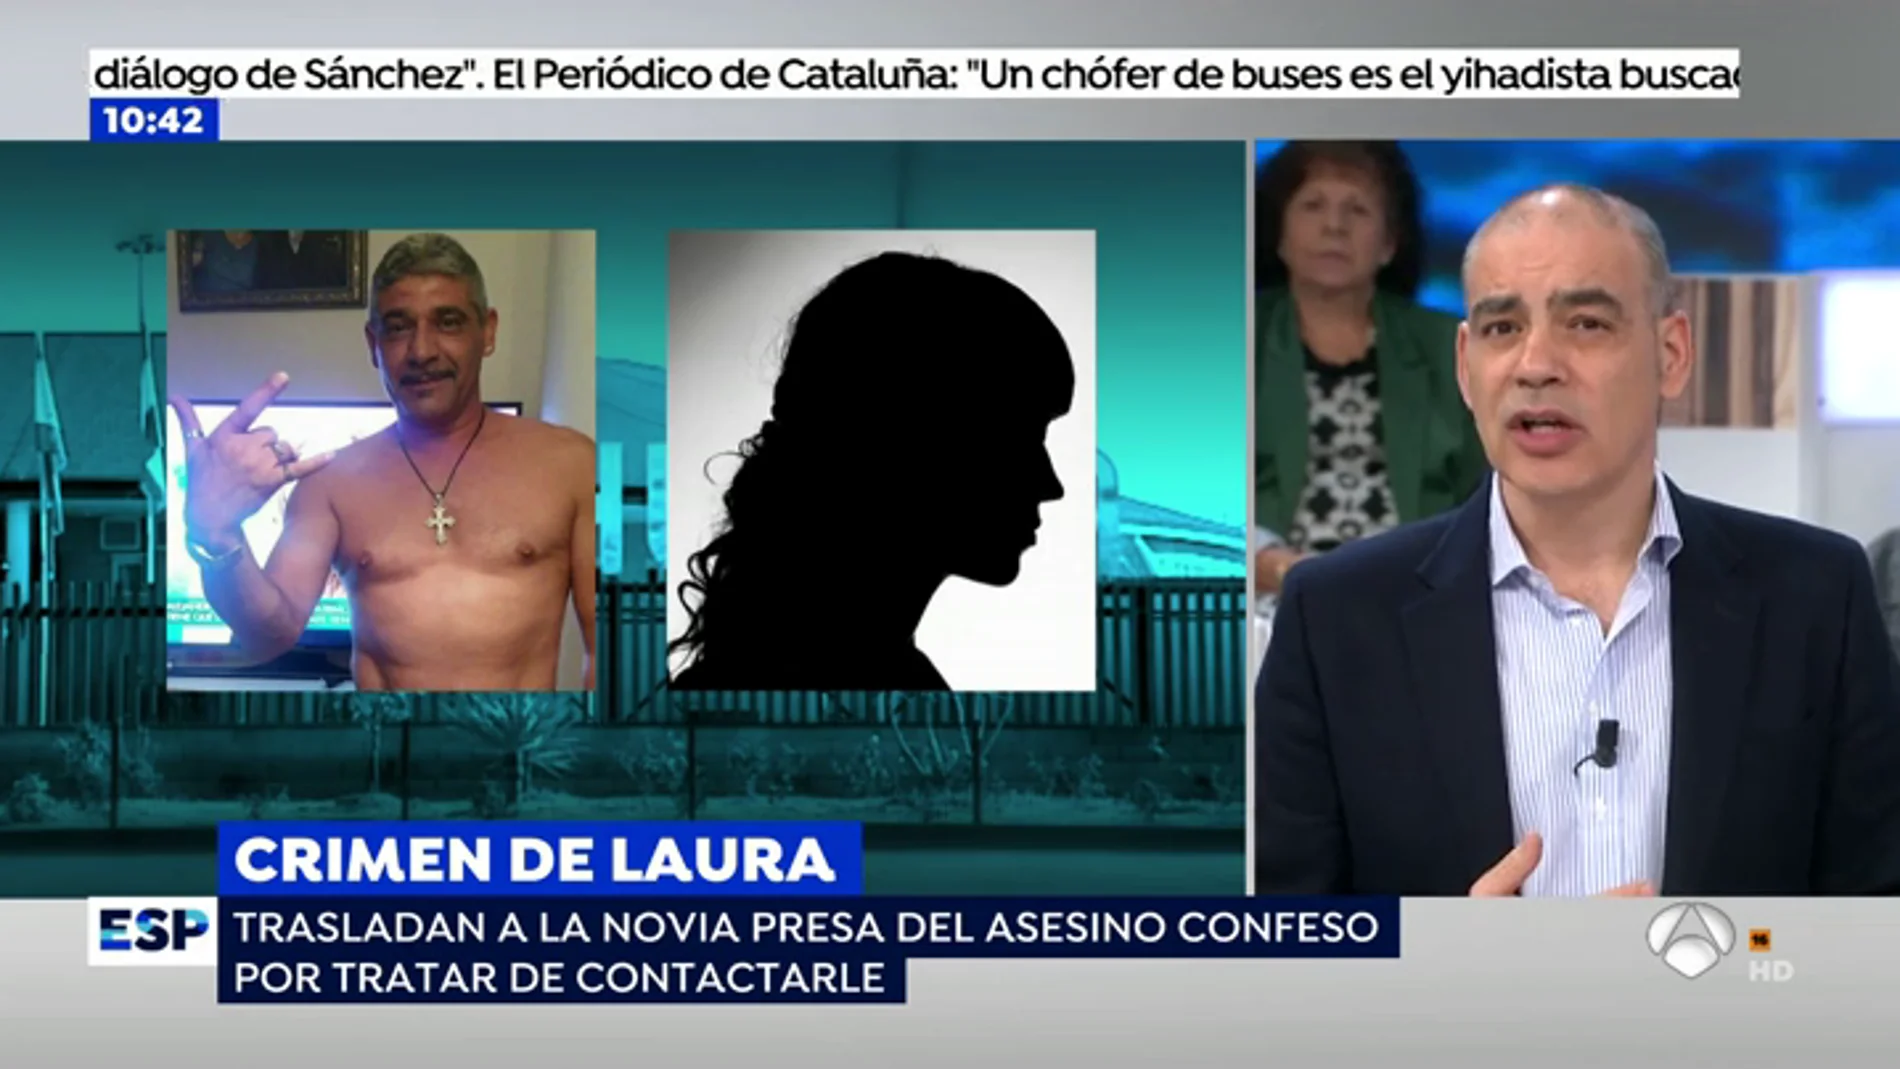 La novia de Bernardo Montoya, asesino de Laura Luelmo, sigue mandándole notas de amor después del crimen